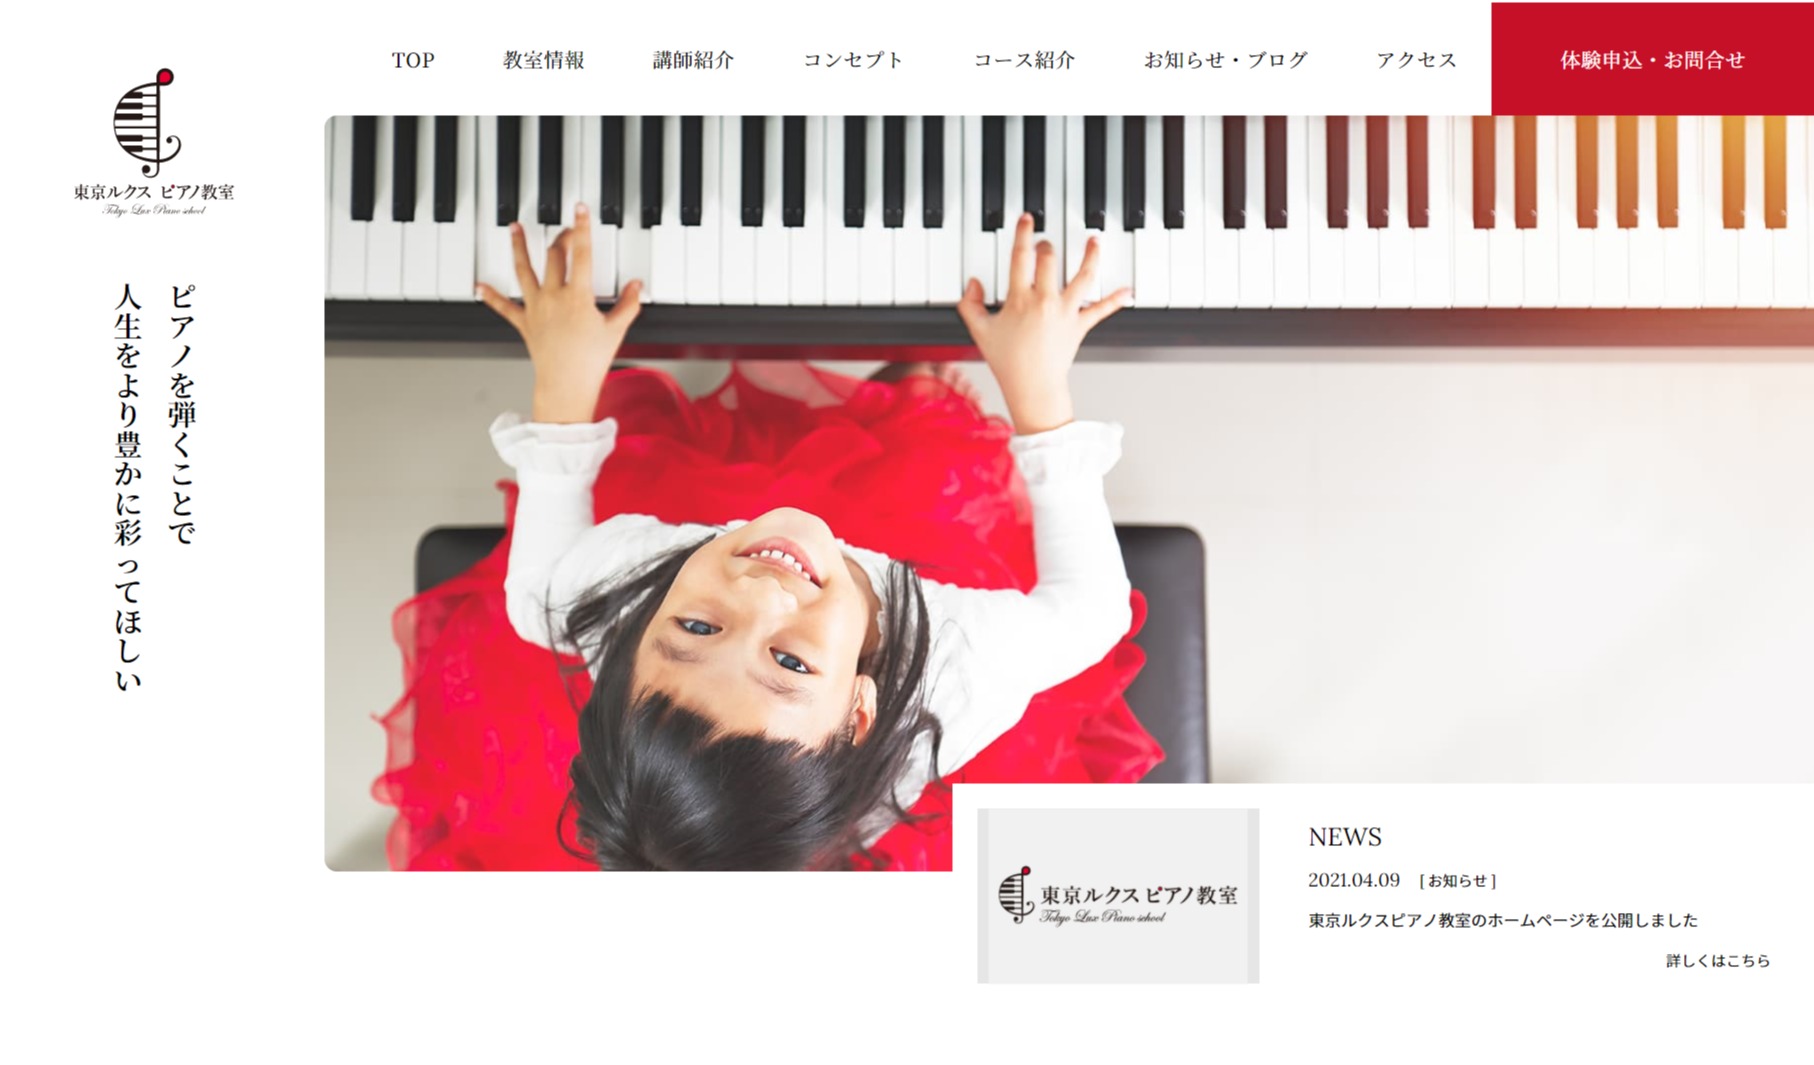 東京ルクスピアノ教室のホームページを公開しました